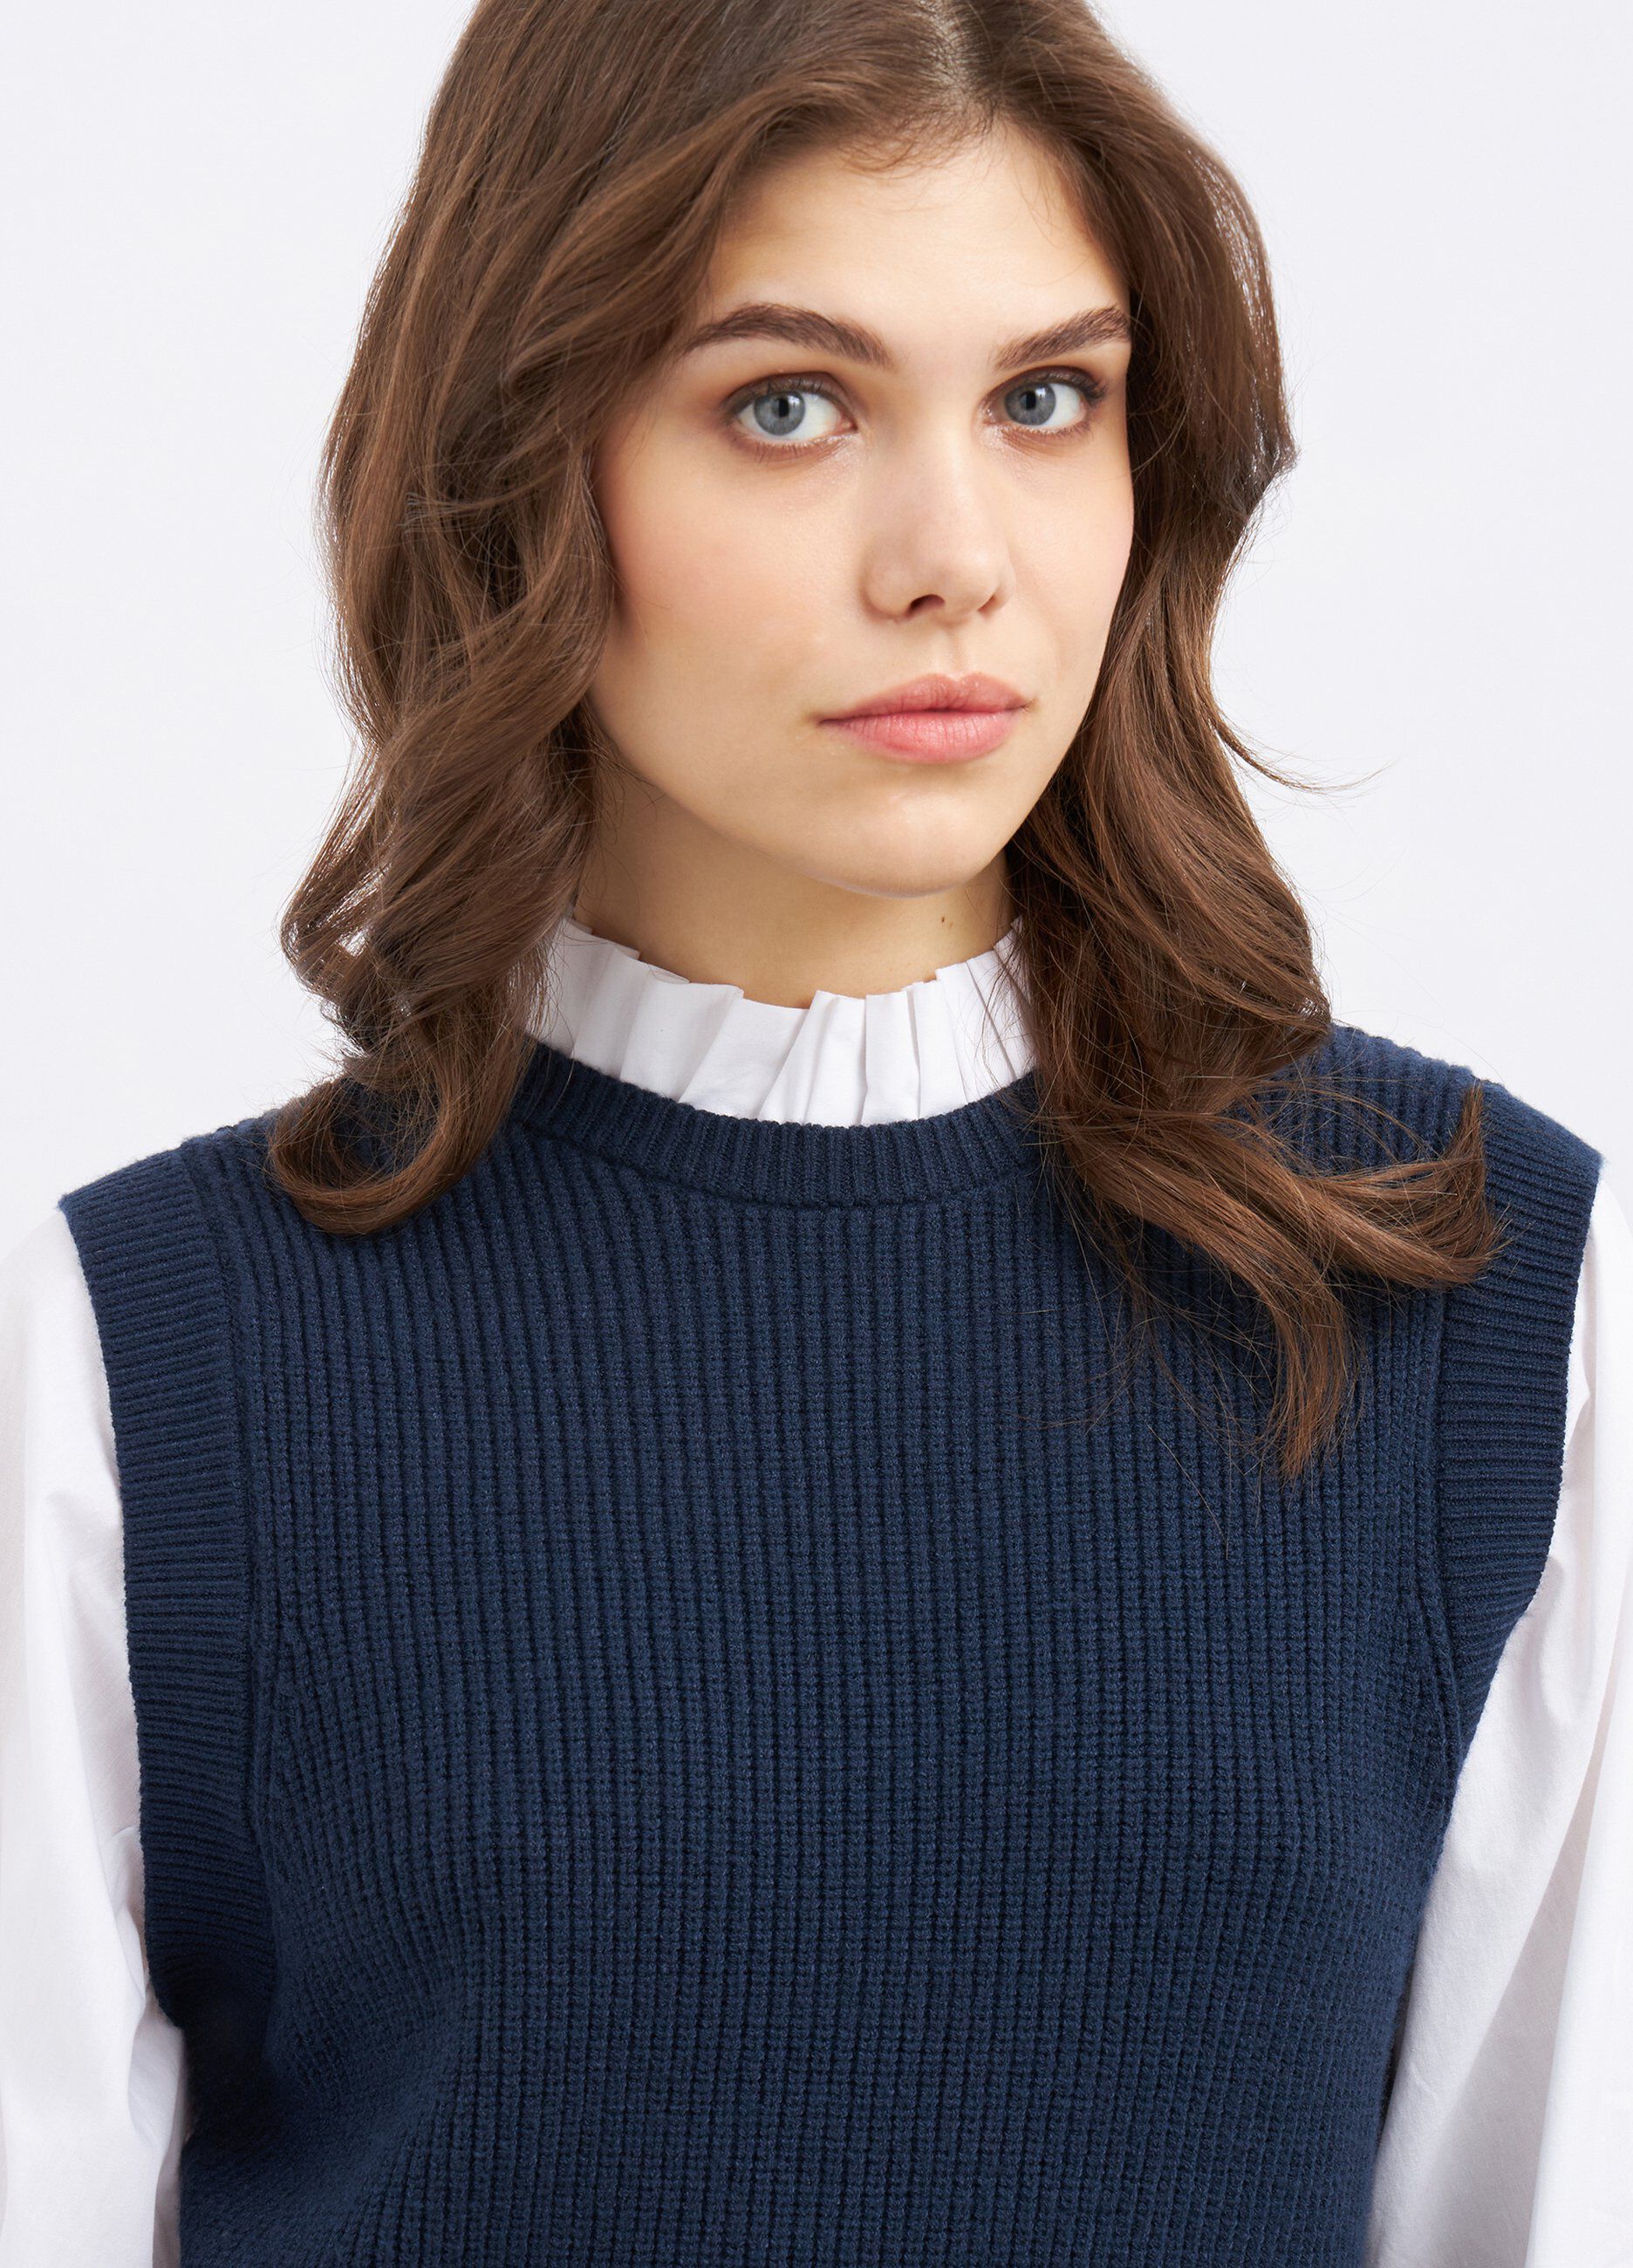 Gilet tricot con inserto blusa donna